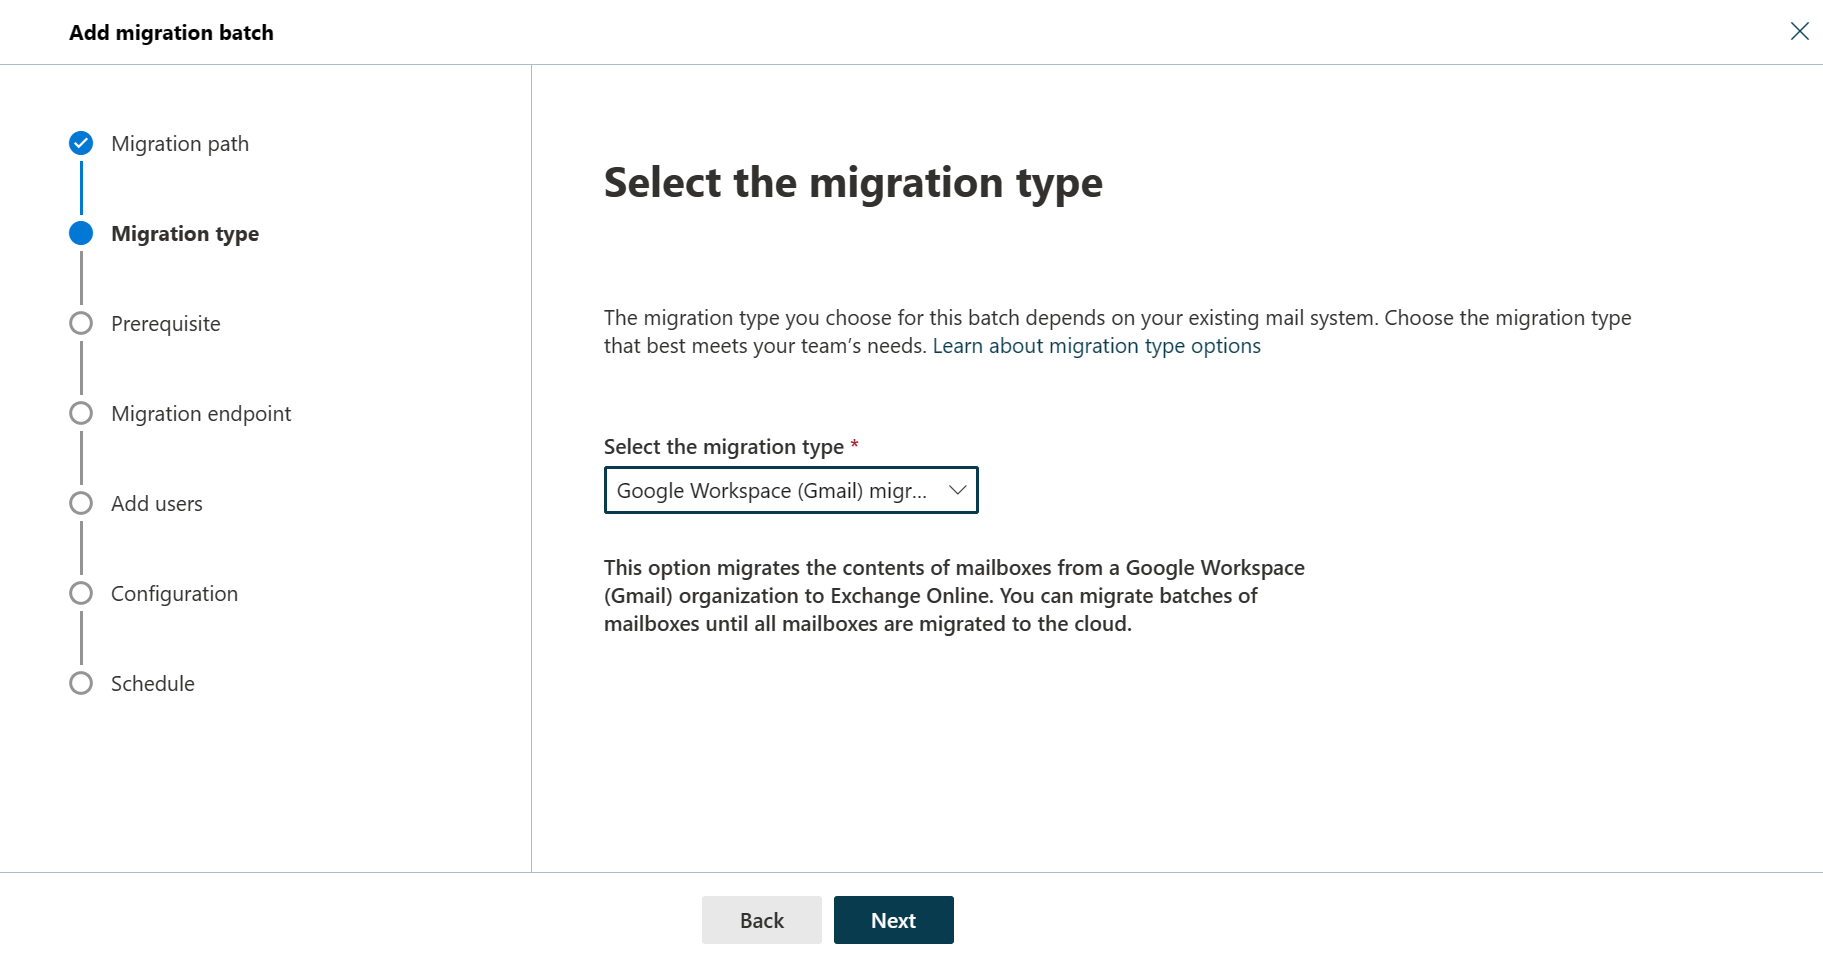 Снимок экрана: второй шаг мастера пакетной миграции с типом миграции, выбранным как миграция Google Workspace (Gmail).